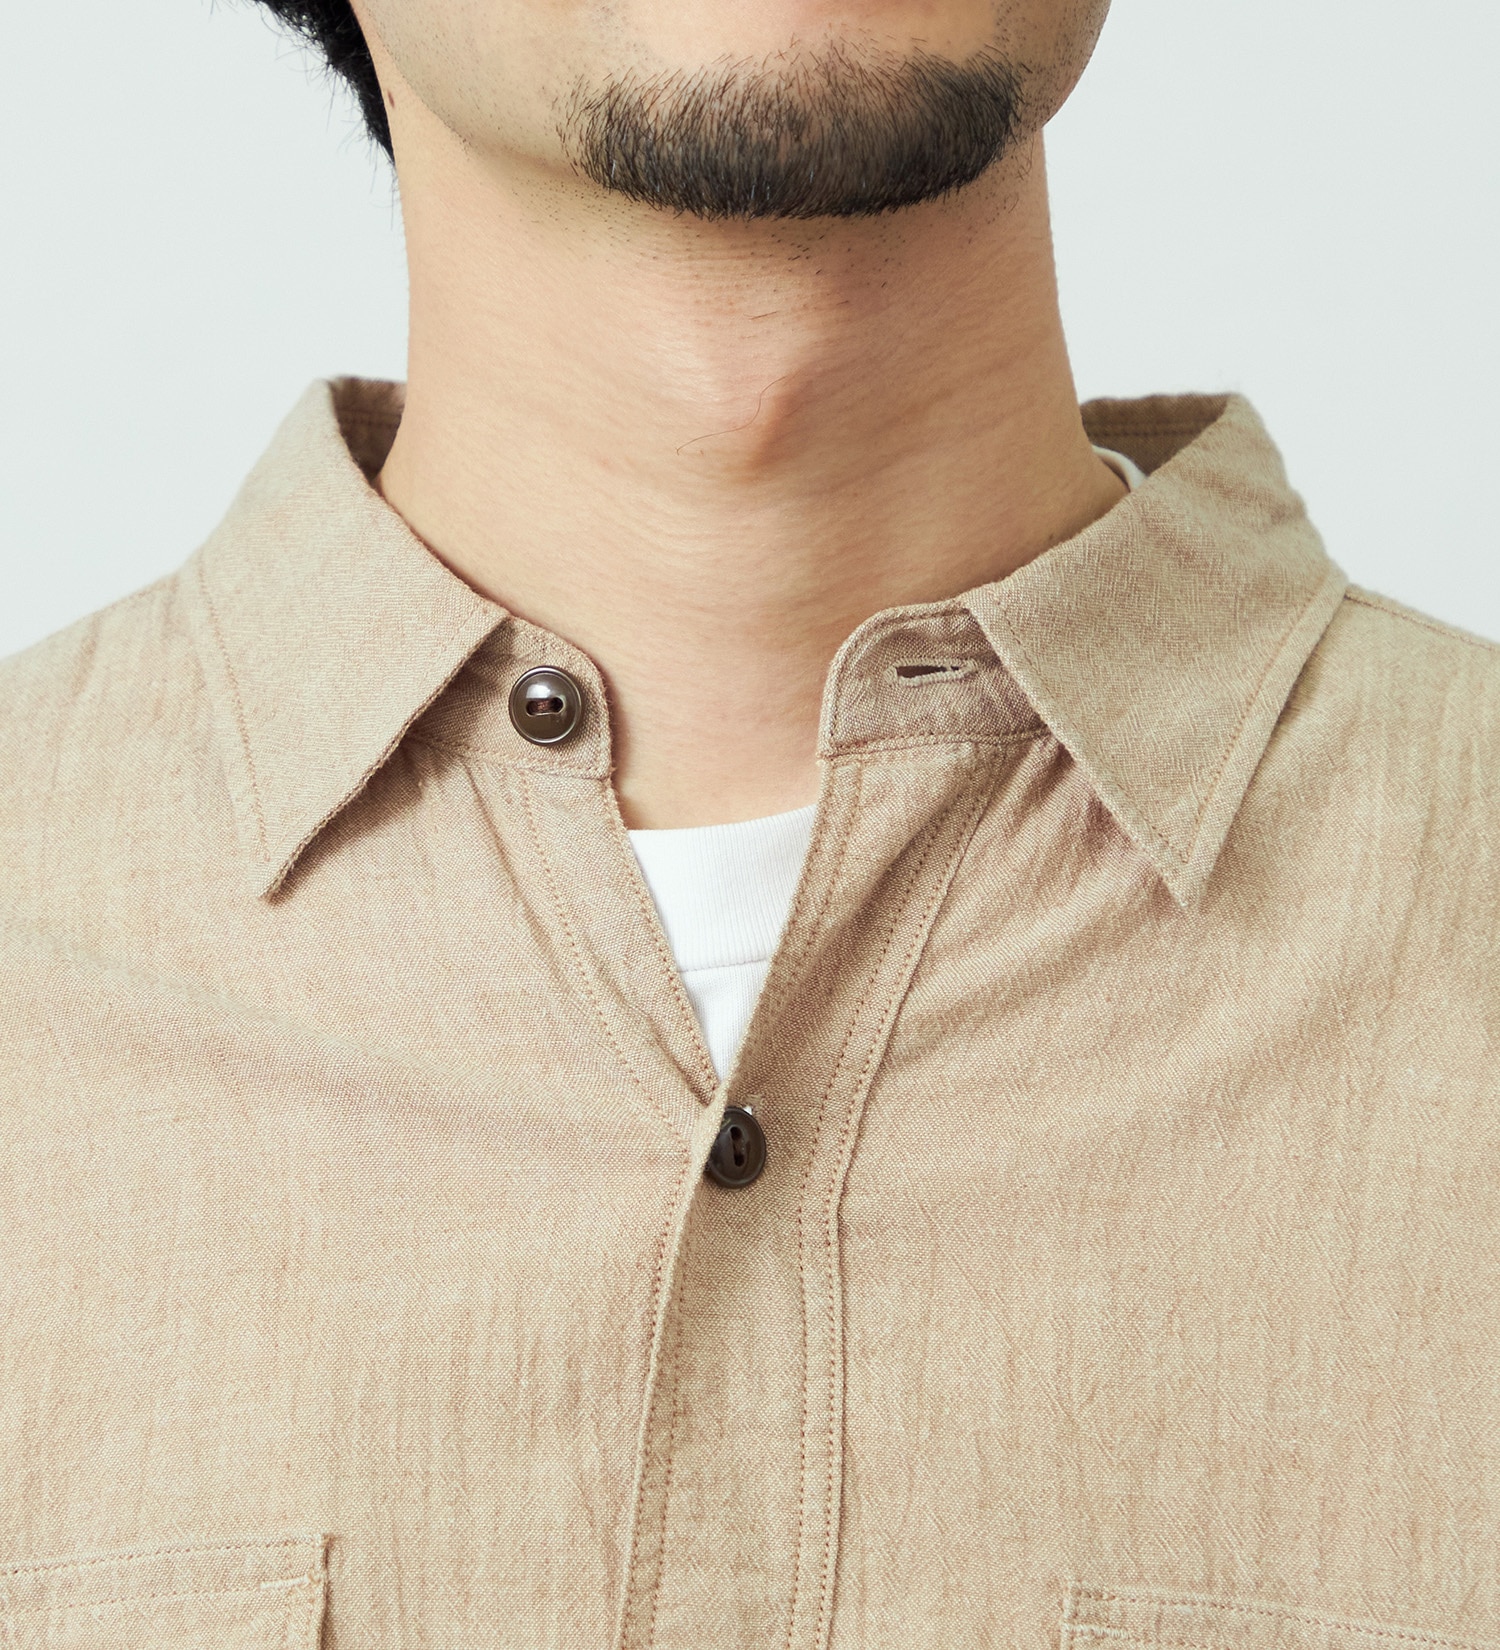 EDWIN(エドウイン)のヴィンテージワークシャツ 長袖|トップス/シャツ/ブラウス/メンズ|ベージュ